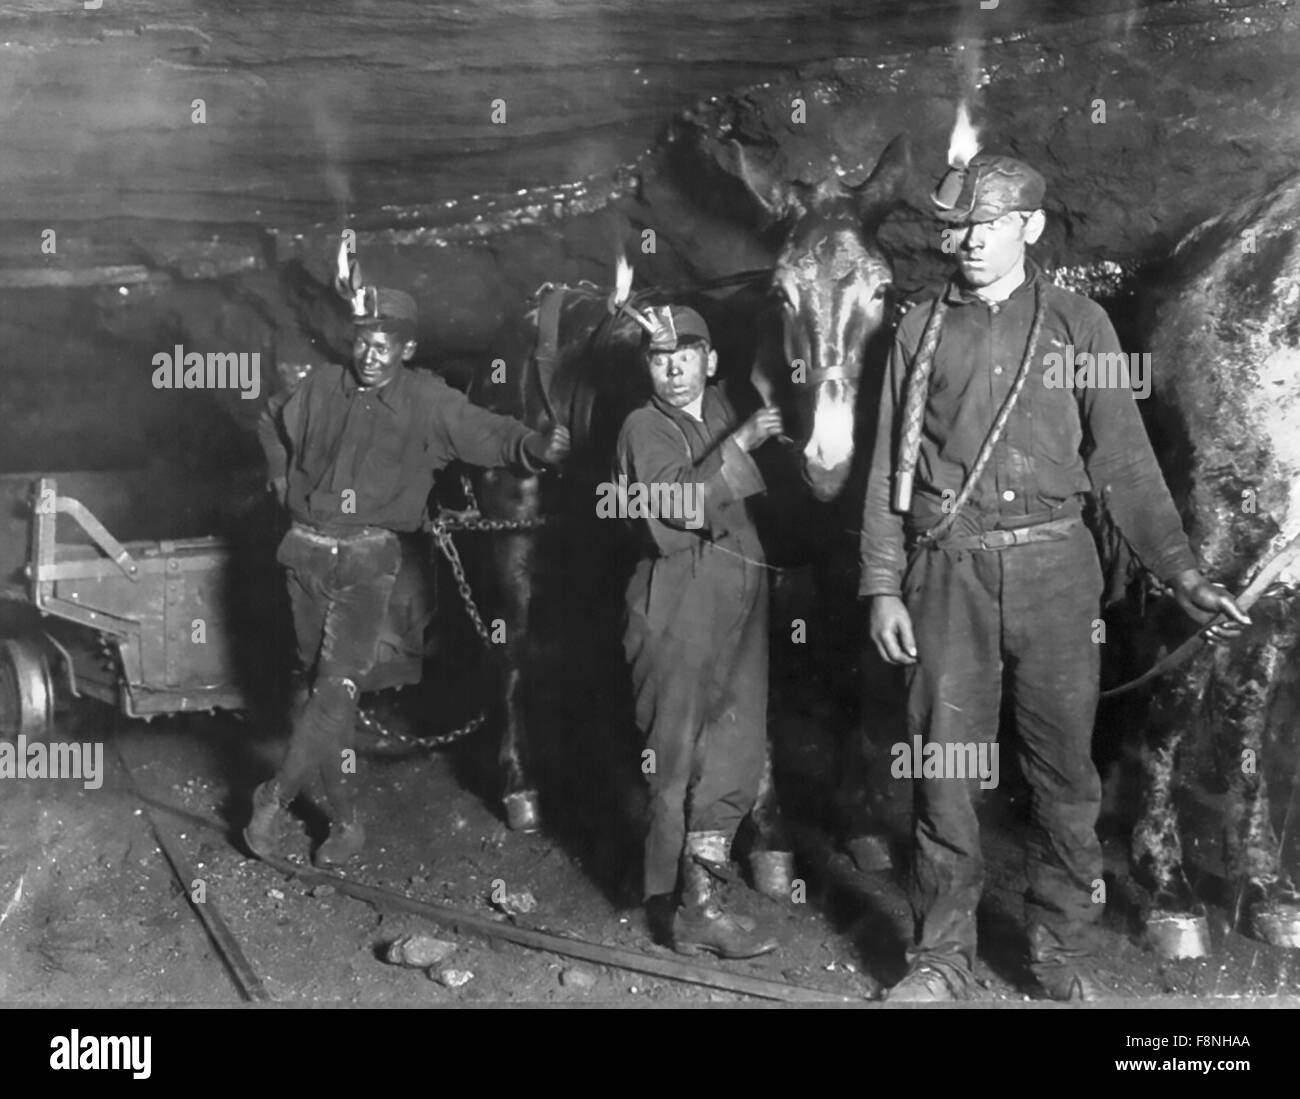 LEWIS Hine (1874-1940) Sociologue et photographe américain. Les mineurs de charbon de l'enfant avec leur wagon et mules dans une mine de Gary, en Virginie de l'Ouest, en septembre 1908 Banque D'Images